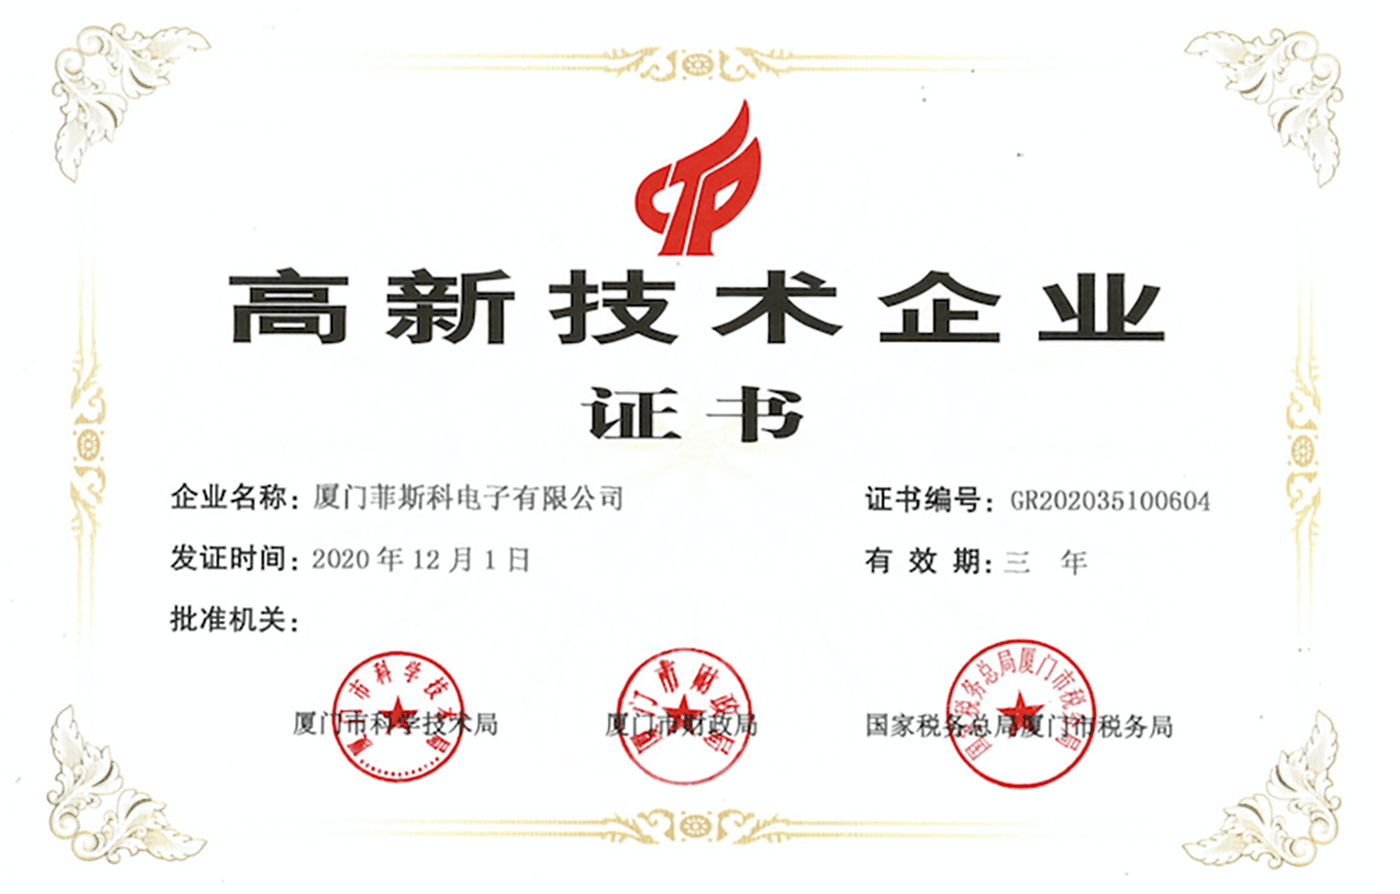 Certificado de empresa de alta tecnología. PNG